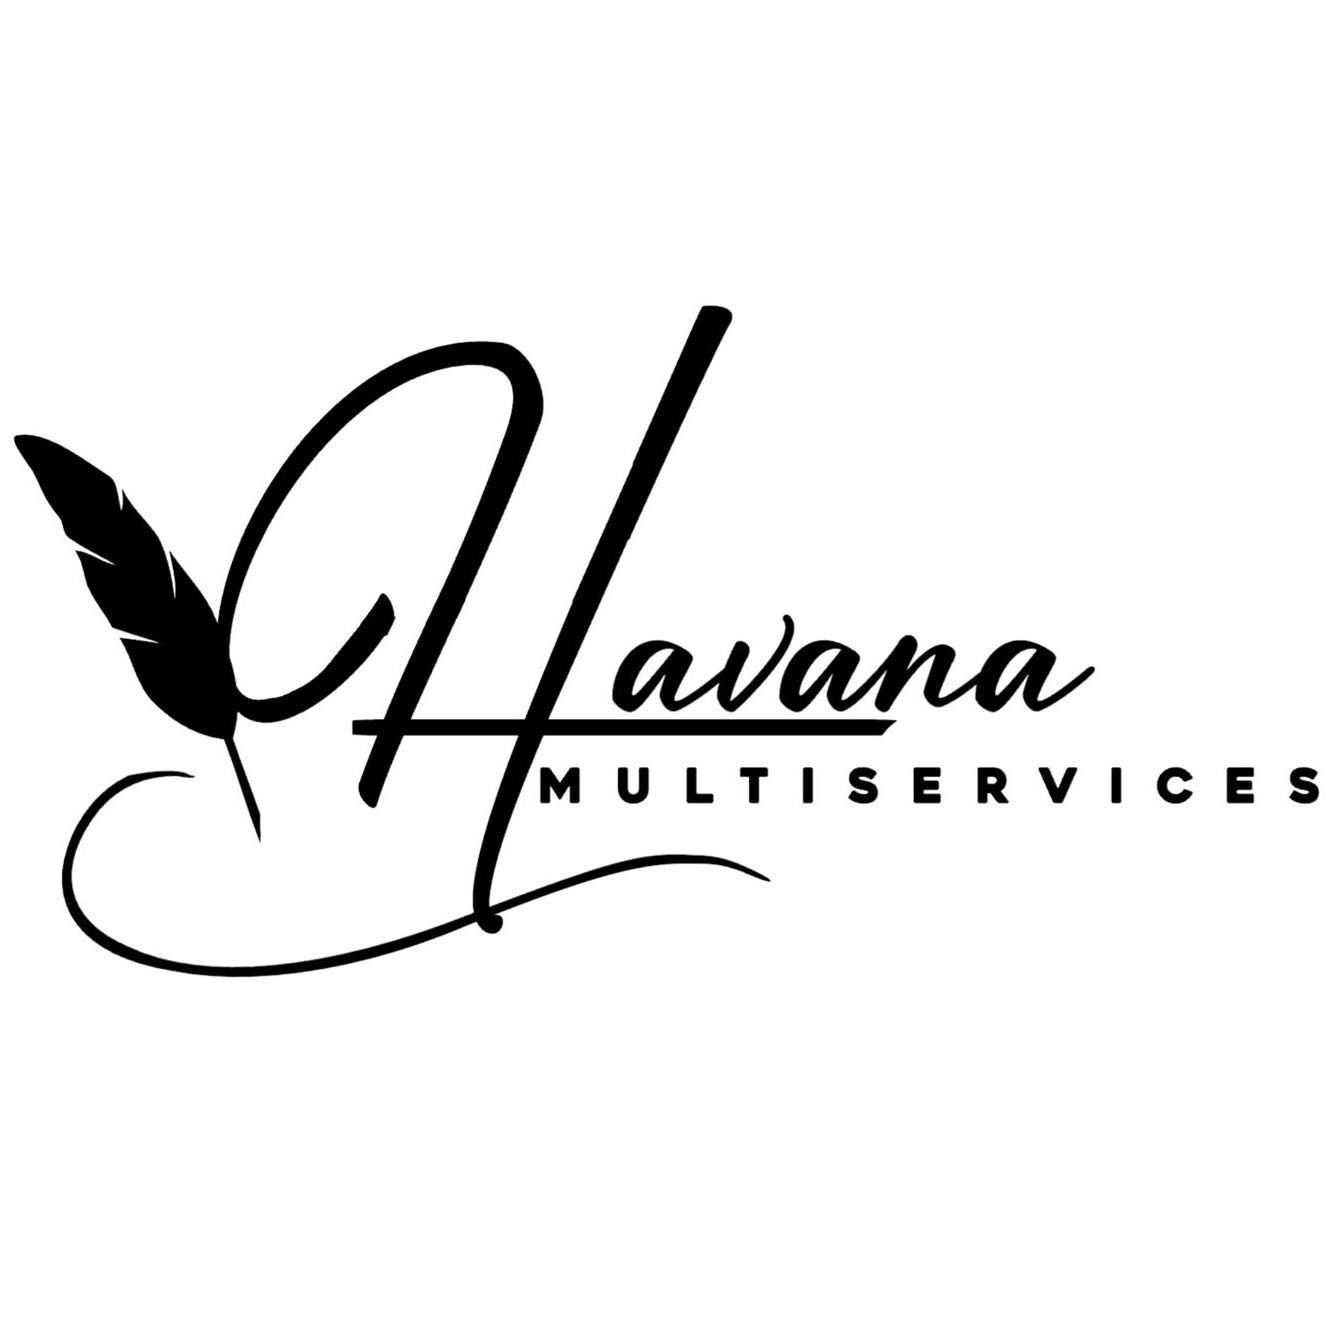 Havana Multiservices LLC, Havana Multiservices, 2350 S Jones Blvd Ste A1, Las Vegas, 89146